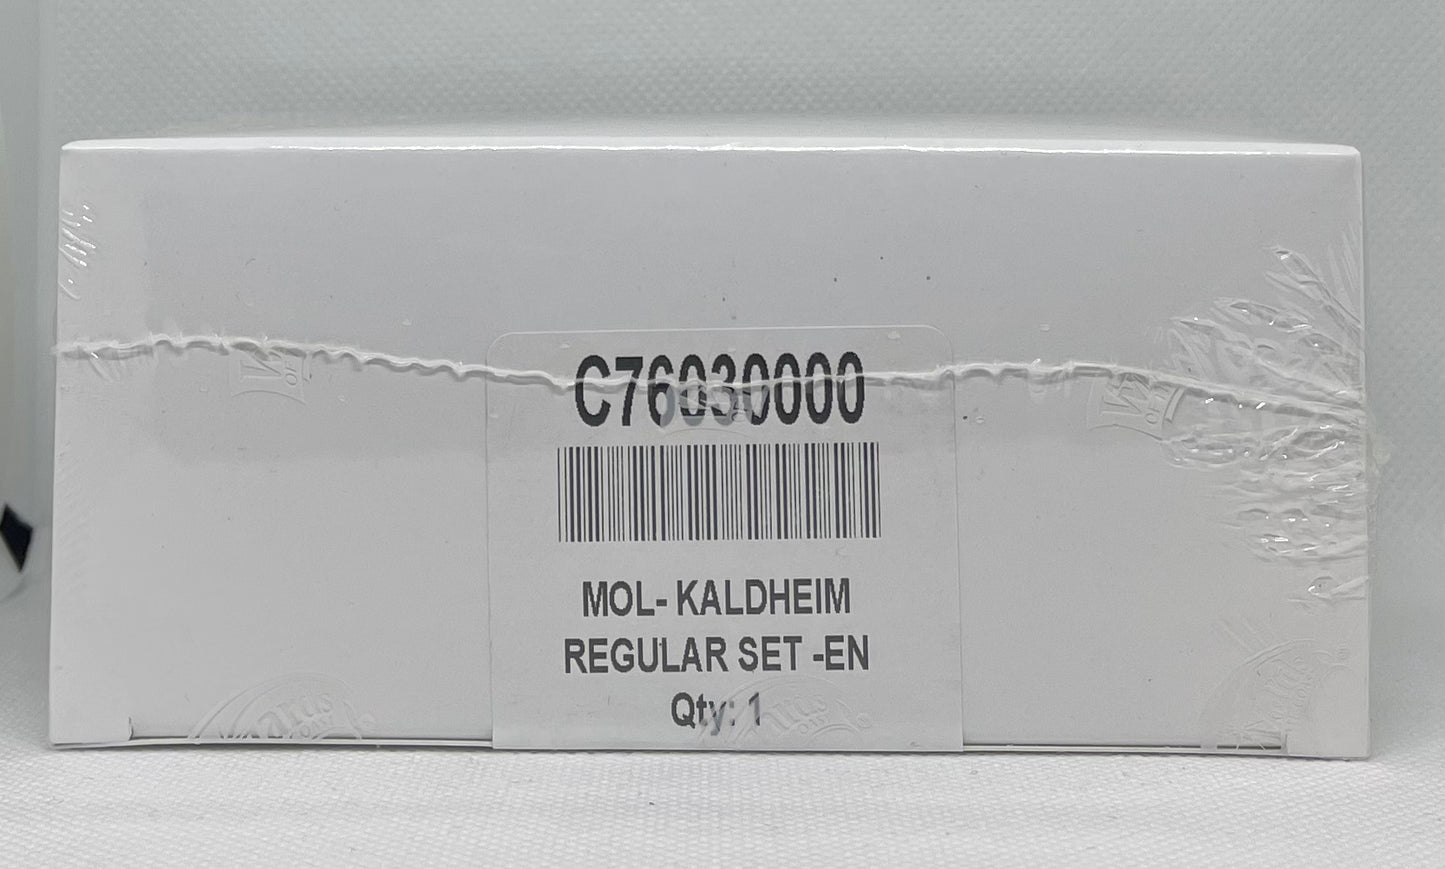 Kaldheim Factory Sealed Complete Set REGULAR